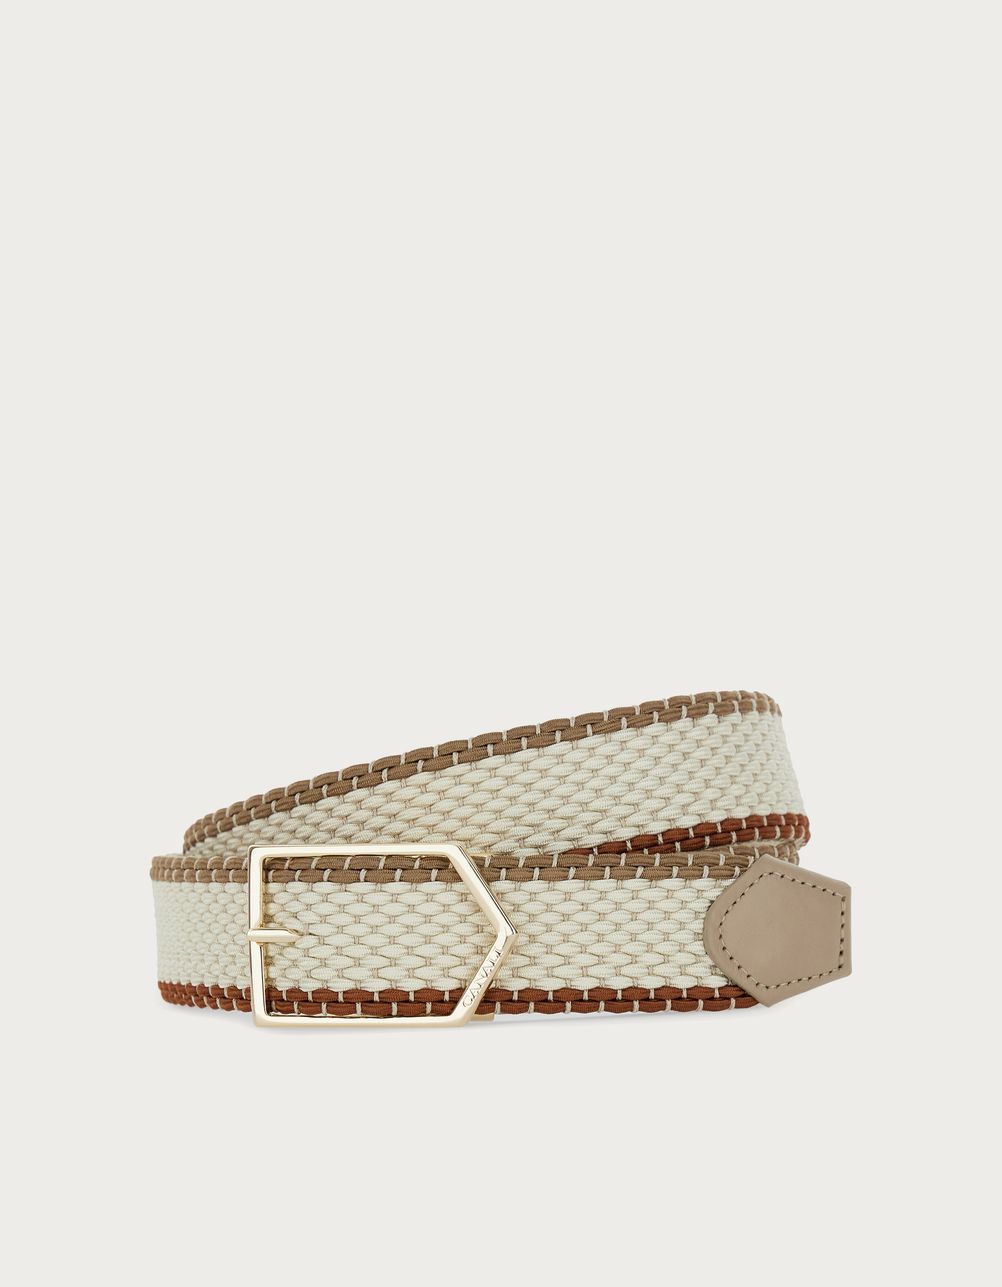 Beige and brown braided belt